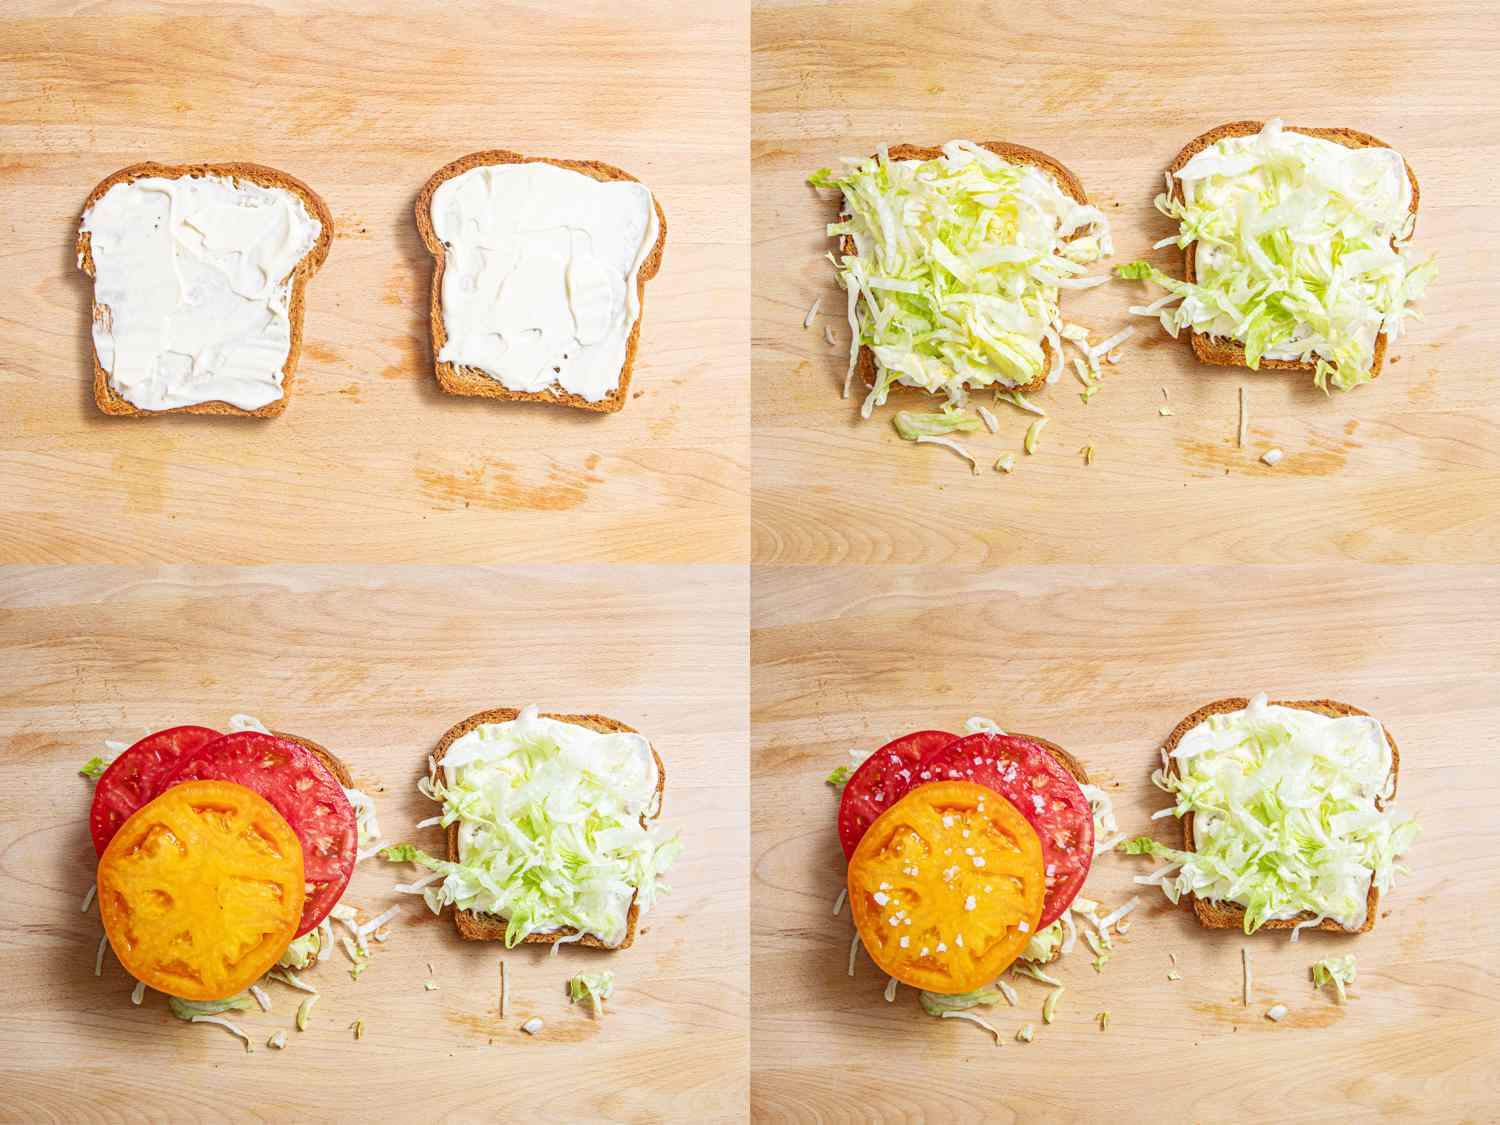 四个图像拼贴。所有的图片都是两片涂了蛋黄酱的面包，展示了制作blt的过程，两边加生菜，一边加番茄，然后用盐腌制西红柿。